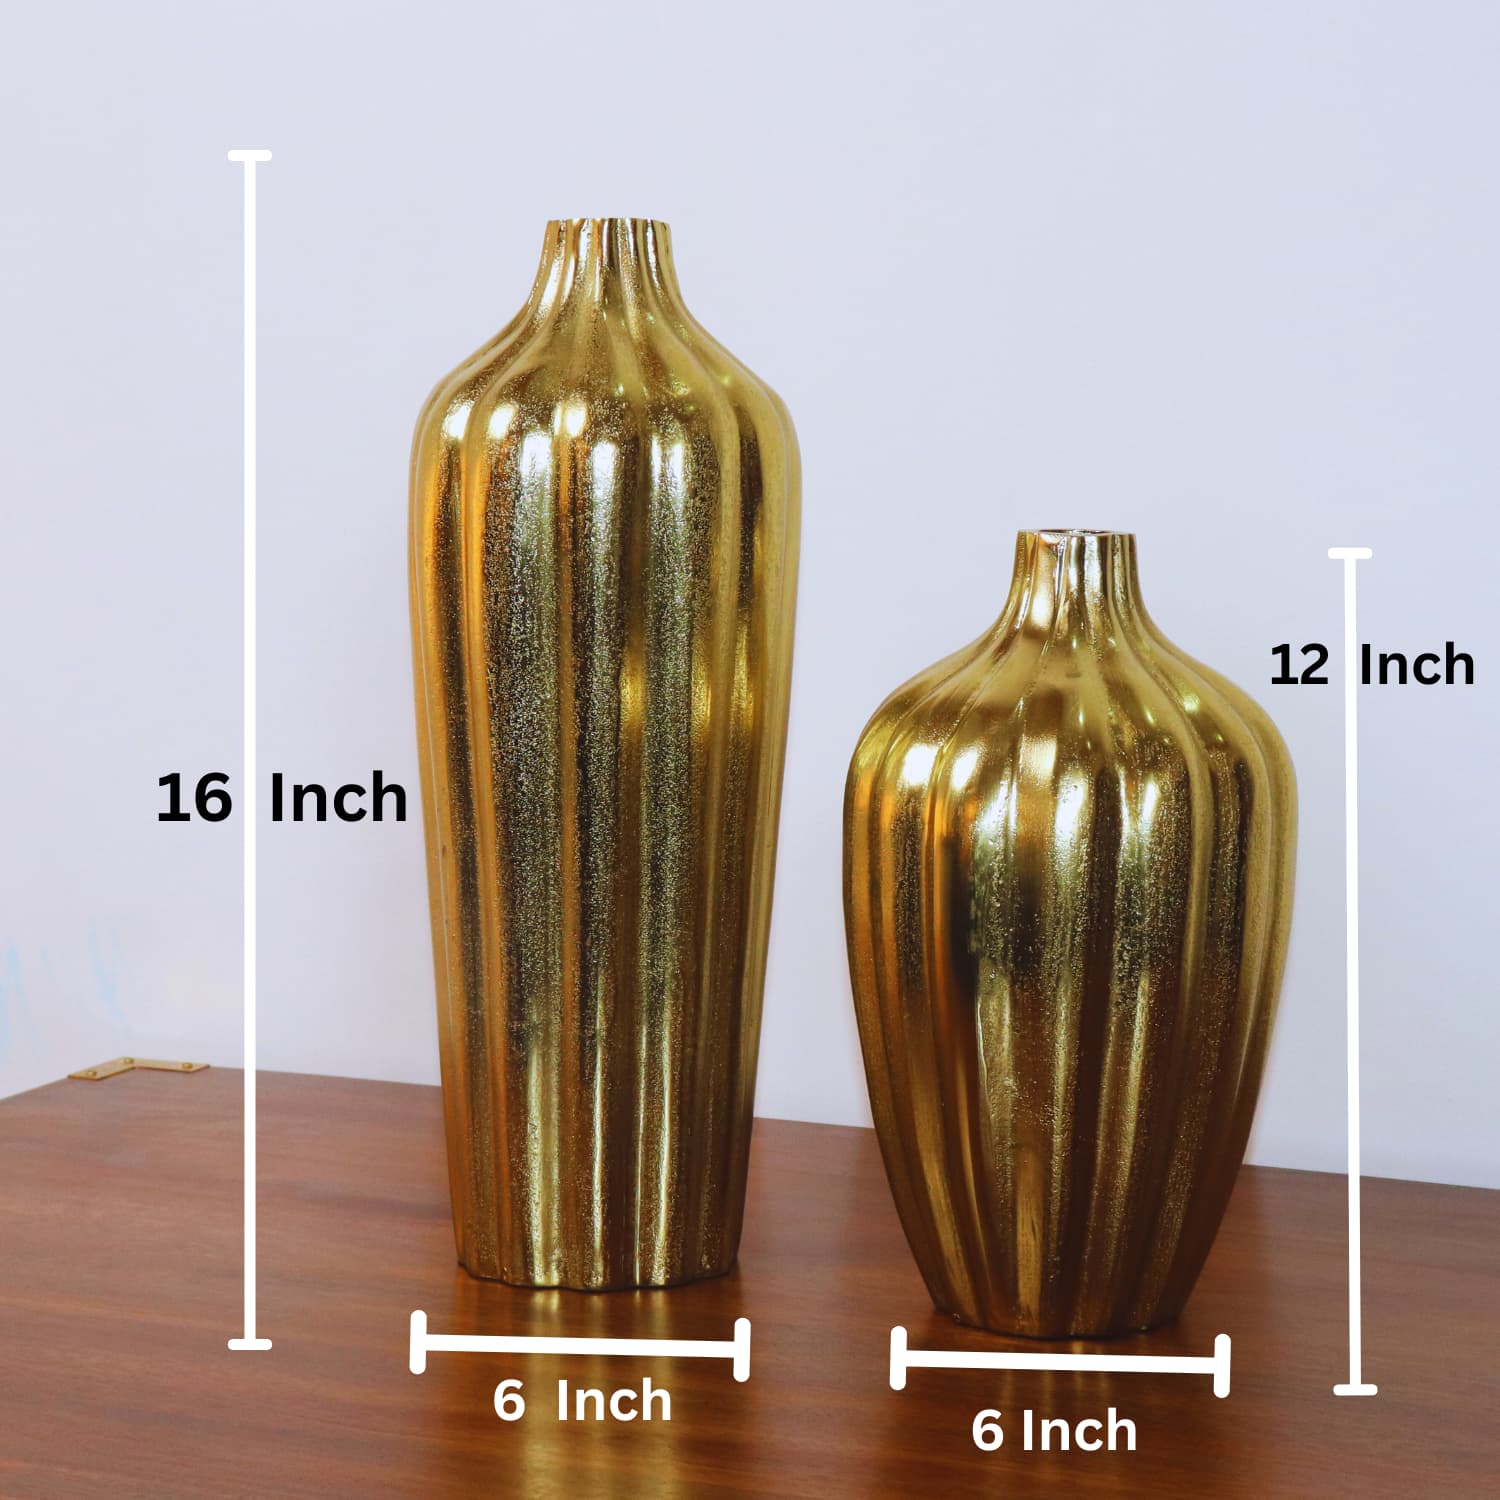 Premium Golden Aurora's Embrace Aluminum Vase measurement